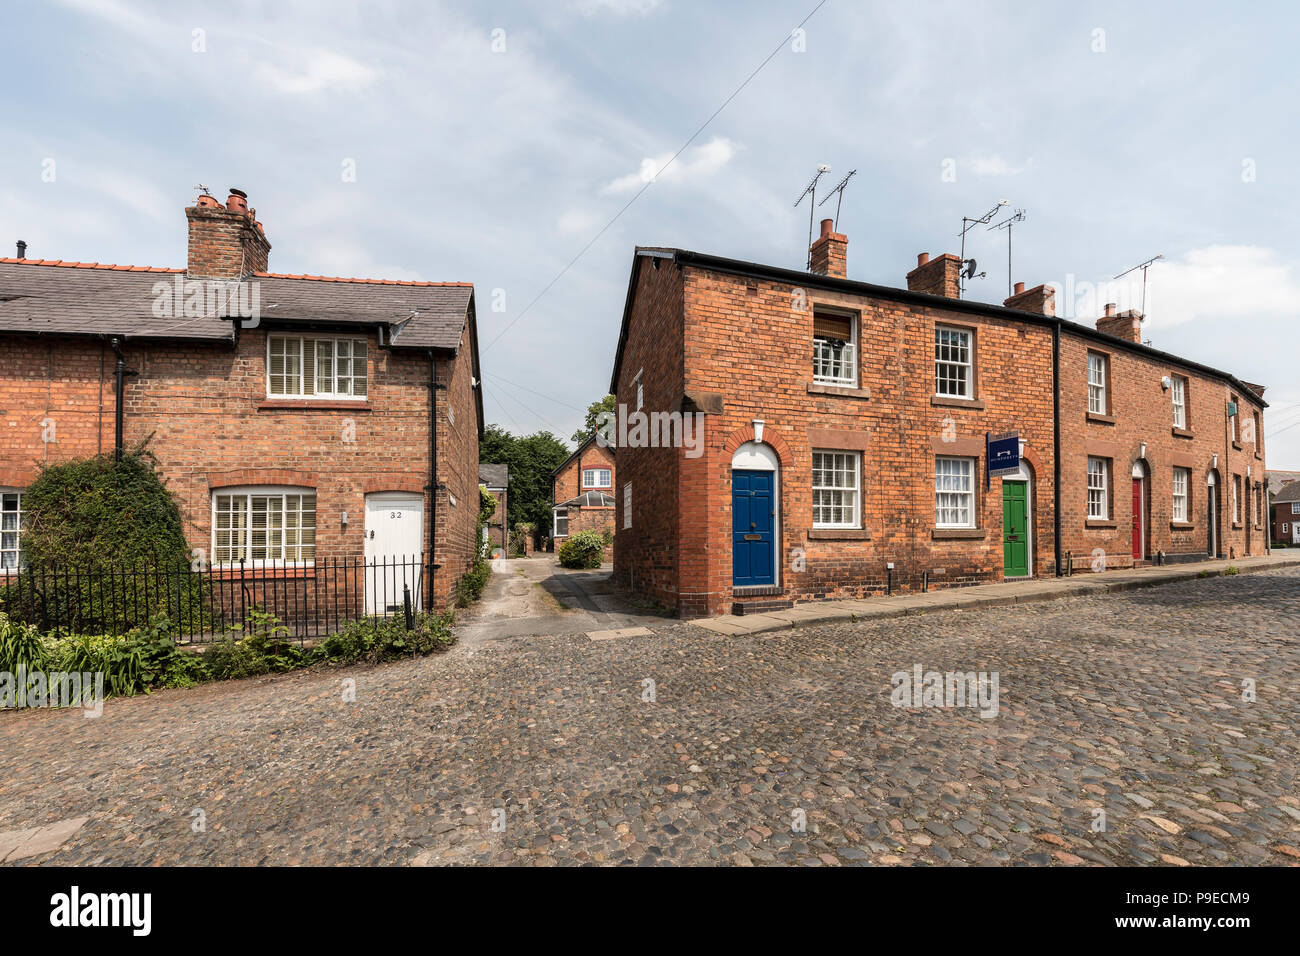 Maisons de briques rouges dans la rue pavée, Chester, Cheshire, Angleterre, Royaume-Uni Banque D'Images